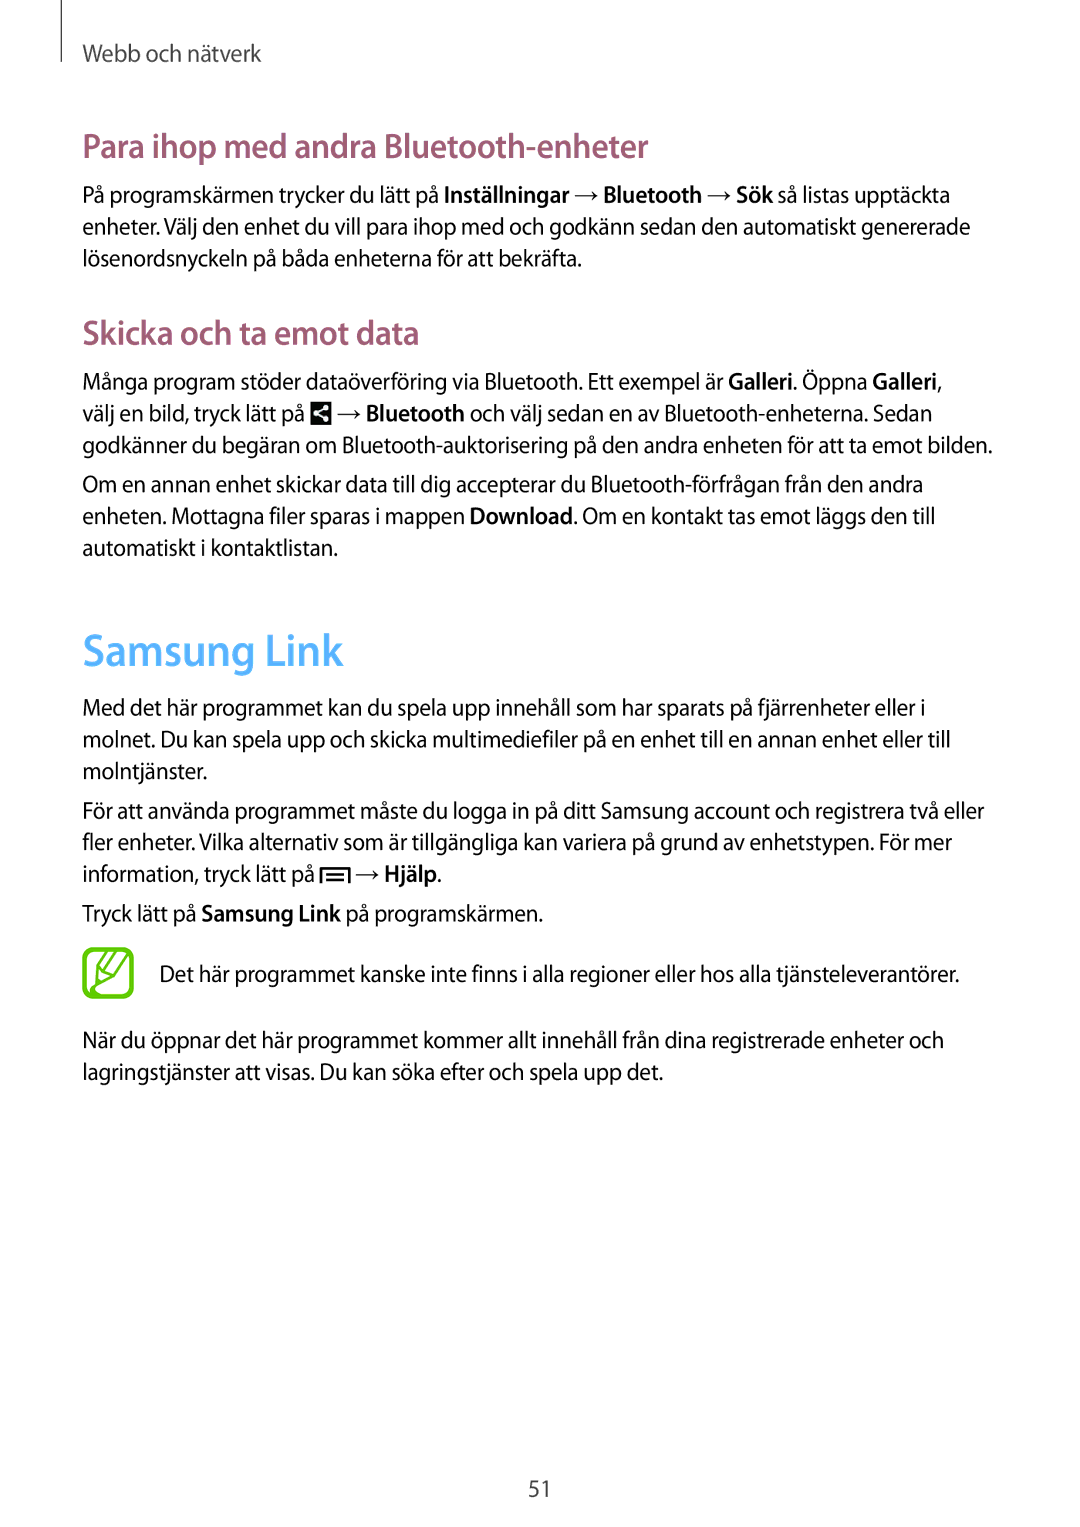 Samsung SM-T2100GRENEE, SM-T2100GNENEE manual Samsung Link, Para ihop med andra Bluetooth-enheter, Skicka och ta emot data 